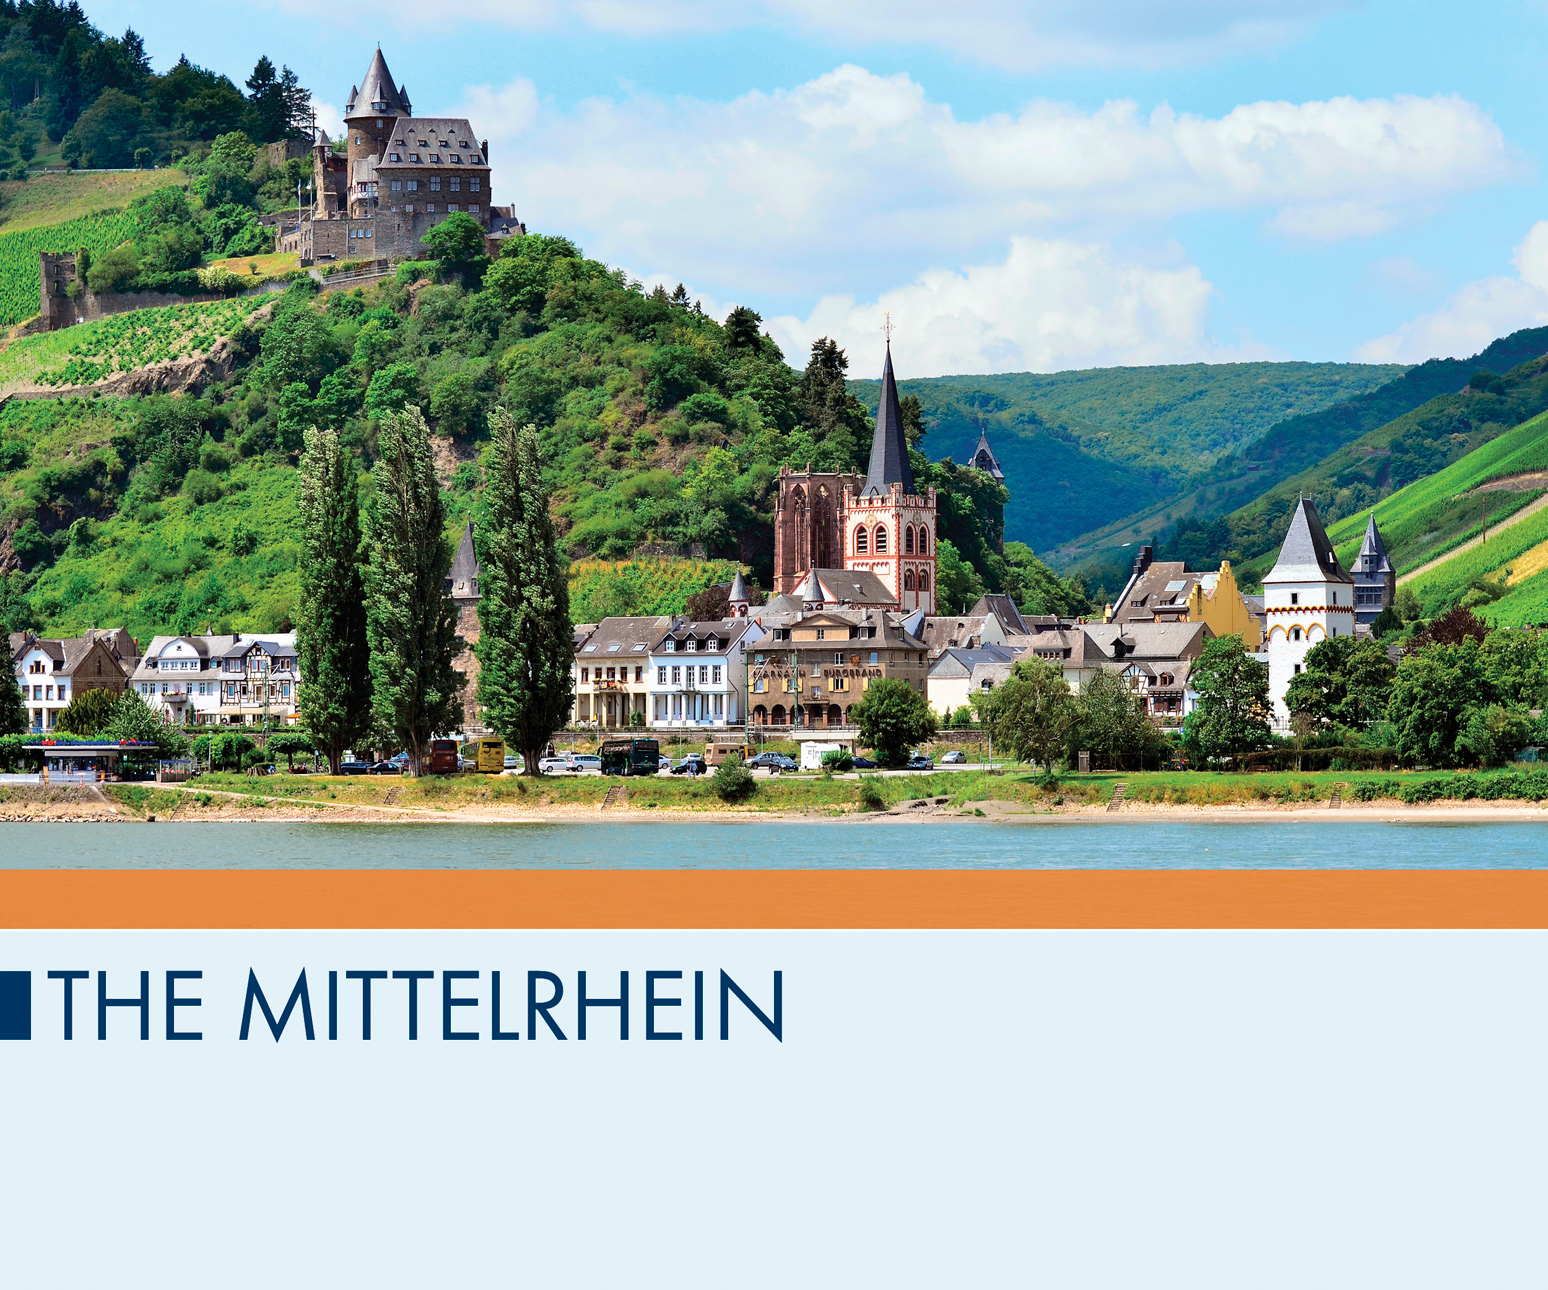 The Mittelrhein